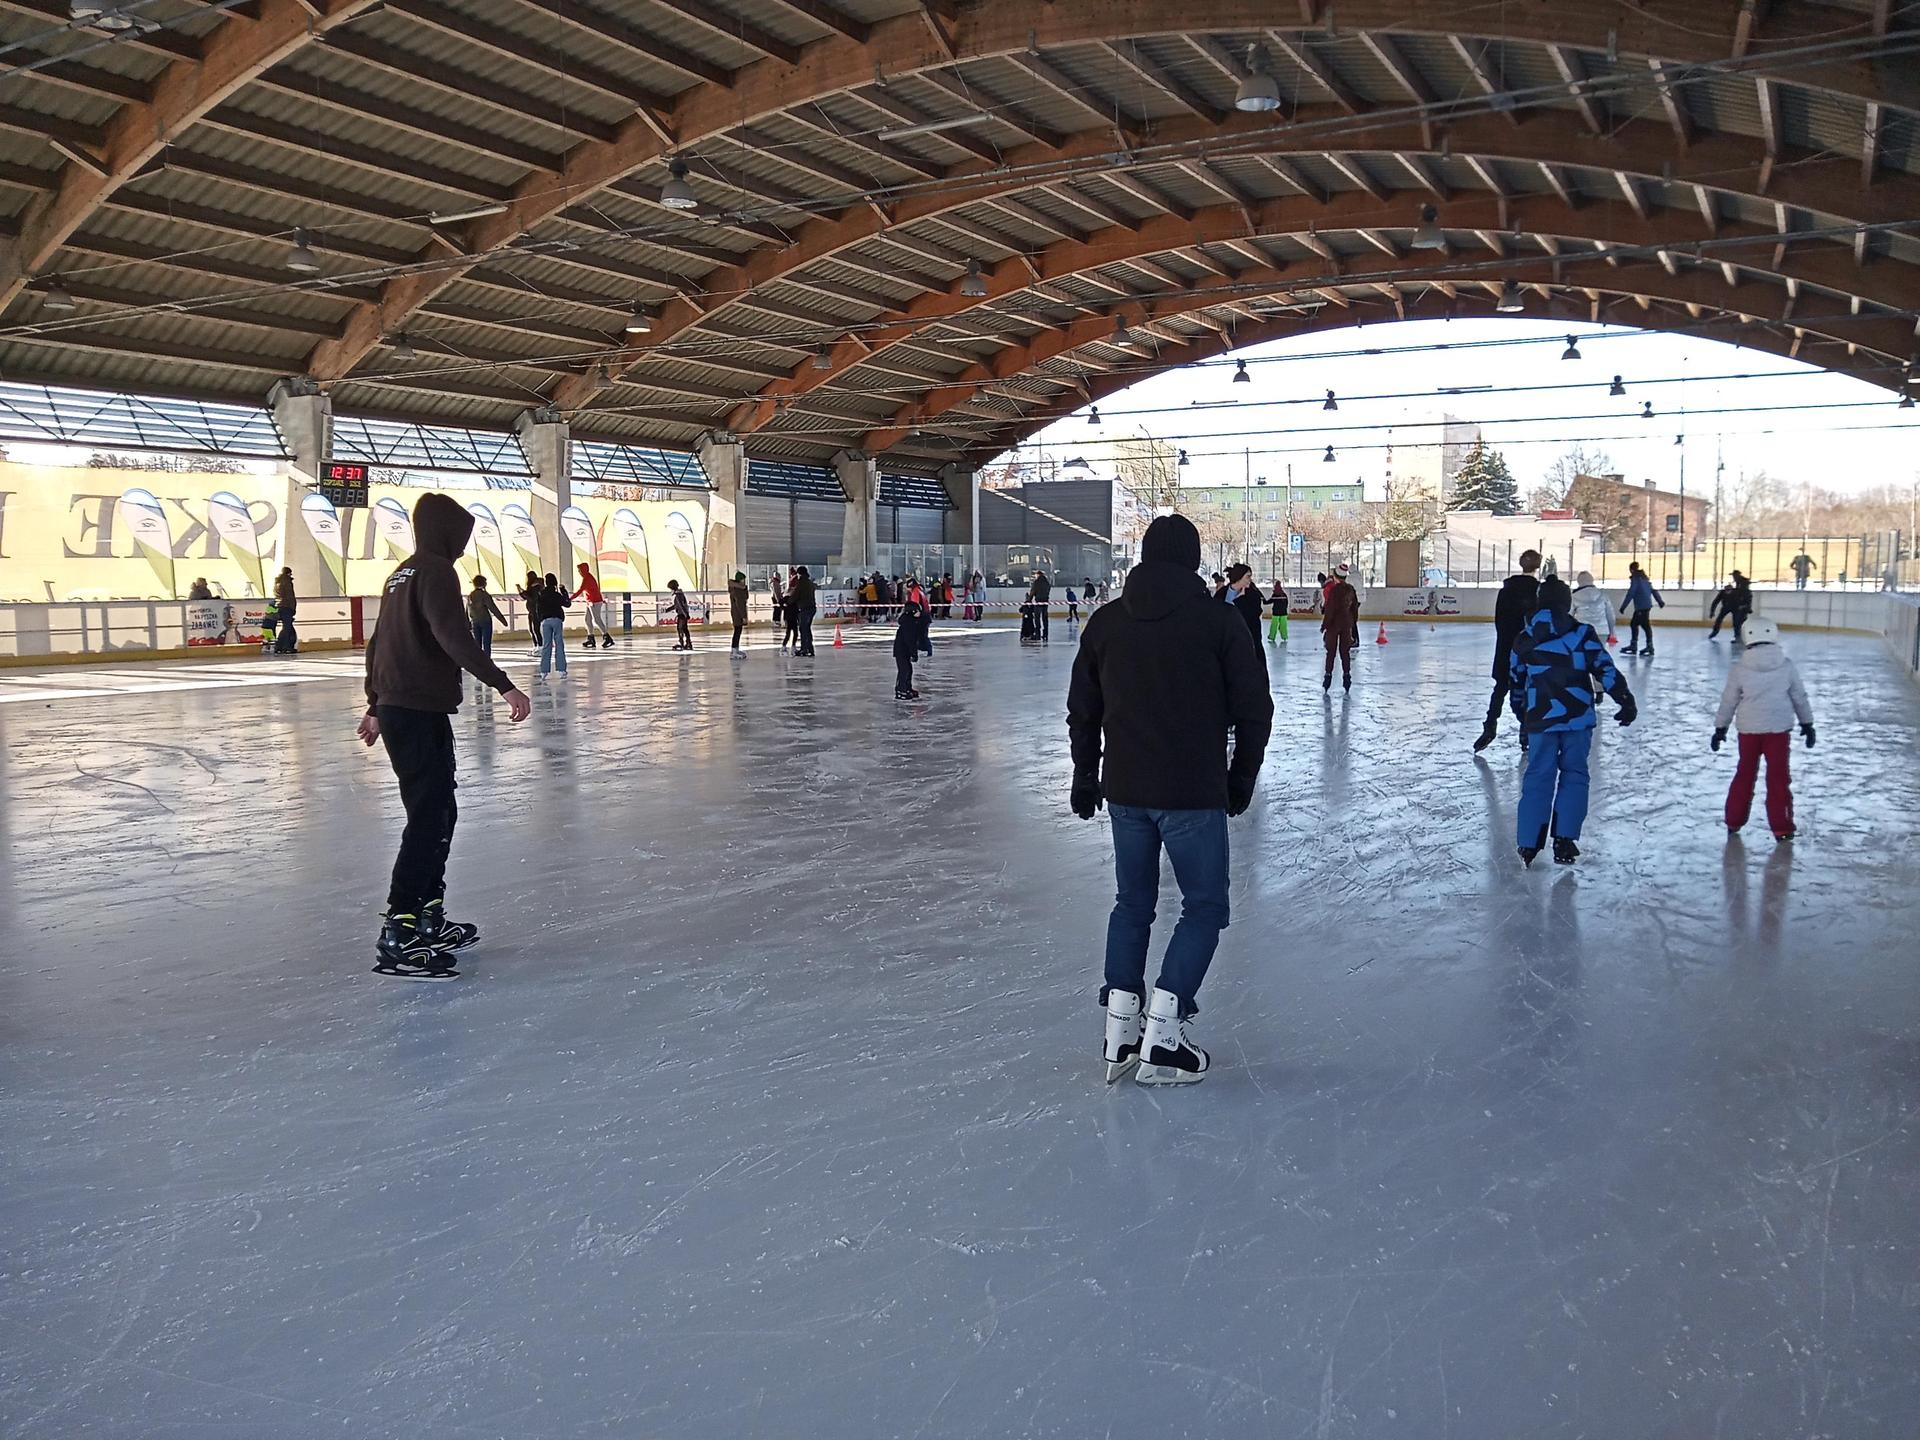 La pista de hielo de Skarżysko-Kamienna se prepara para la temporada.  ¡Sabemos cuándo empieza!  Habrá lecciones de patinaje sobre hielo y otras atracciones.